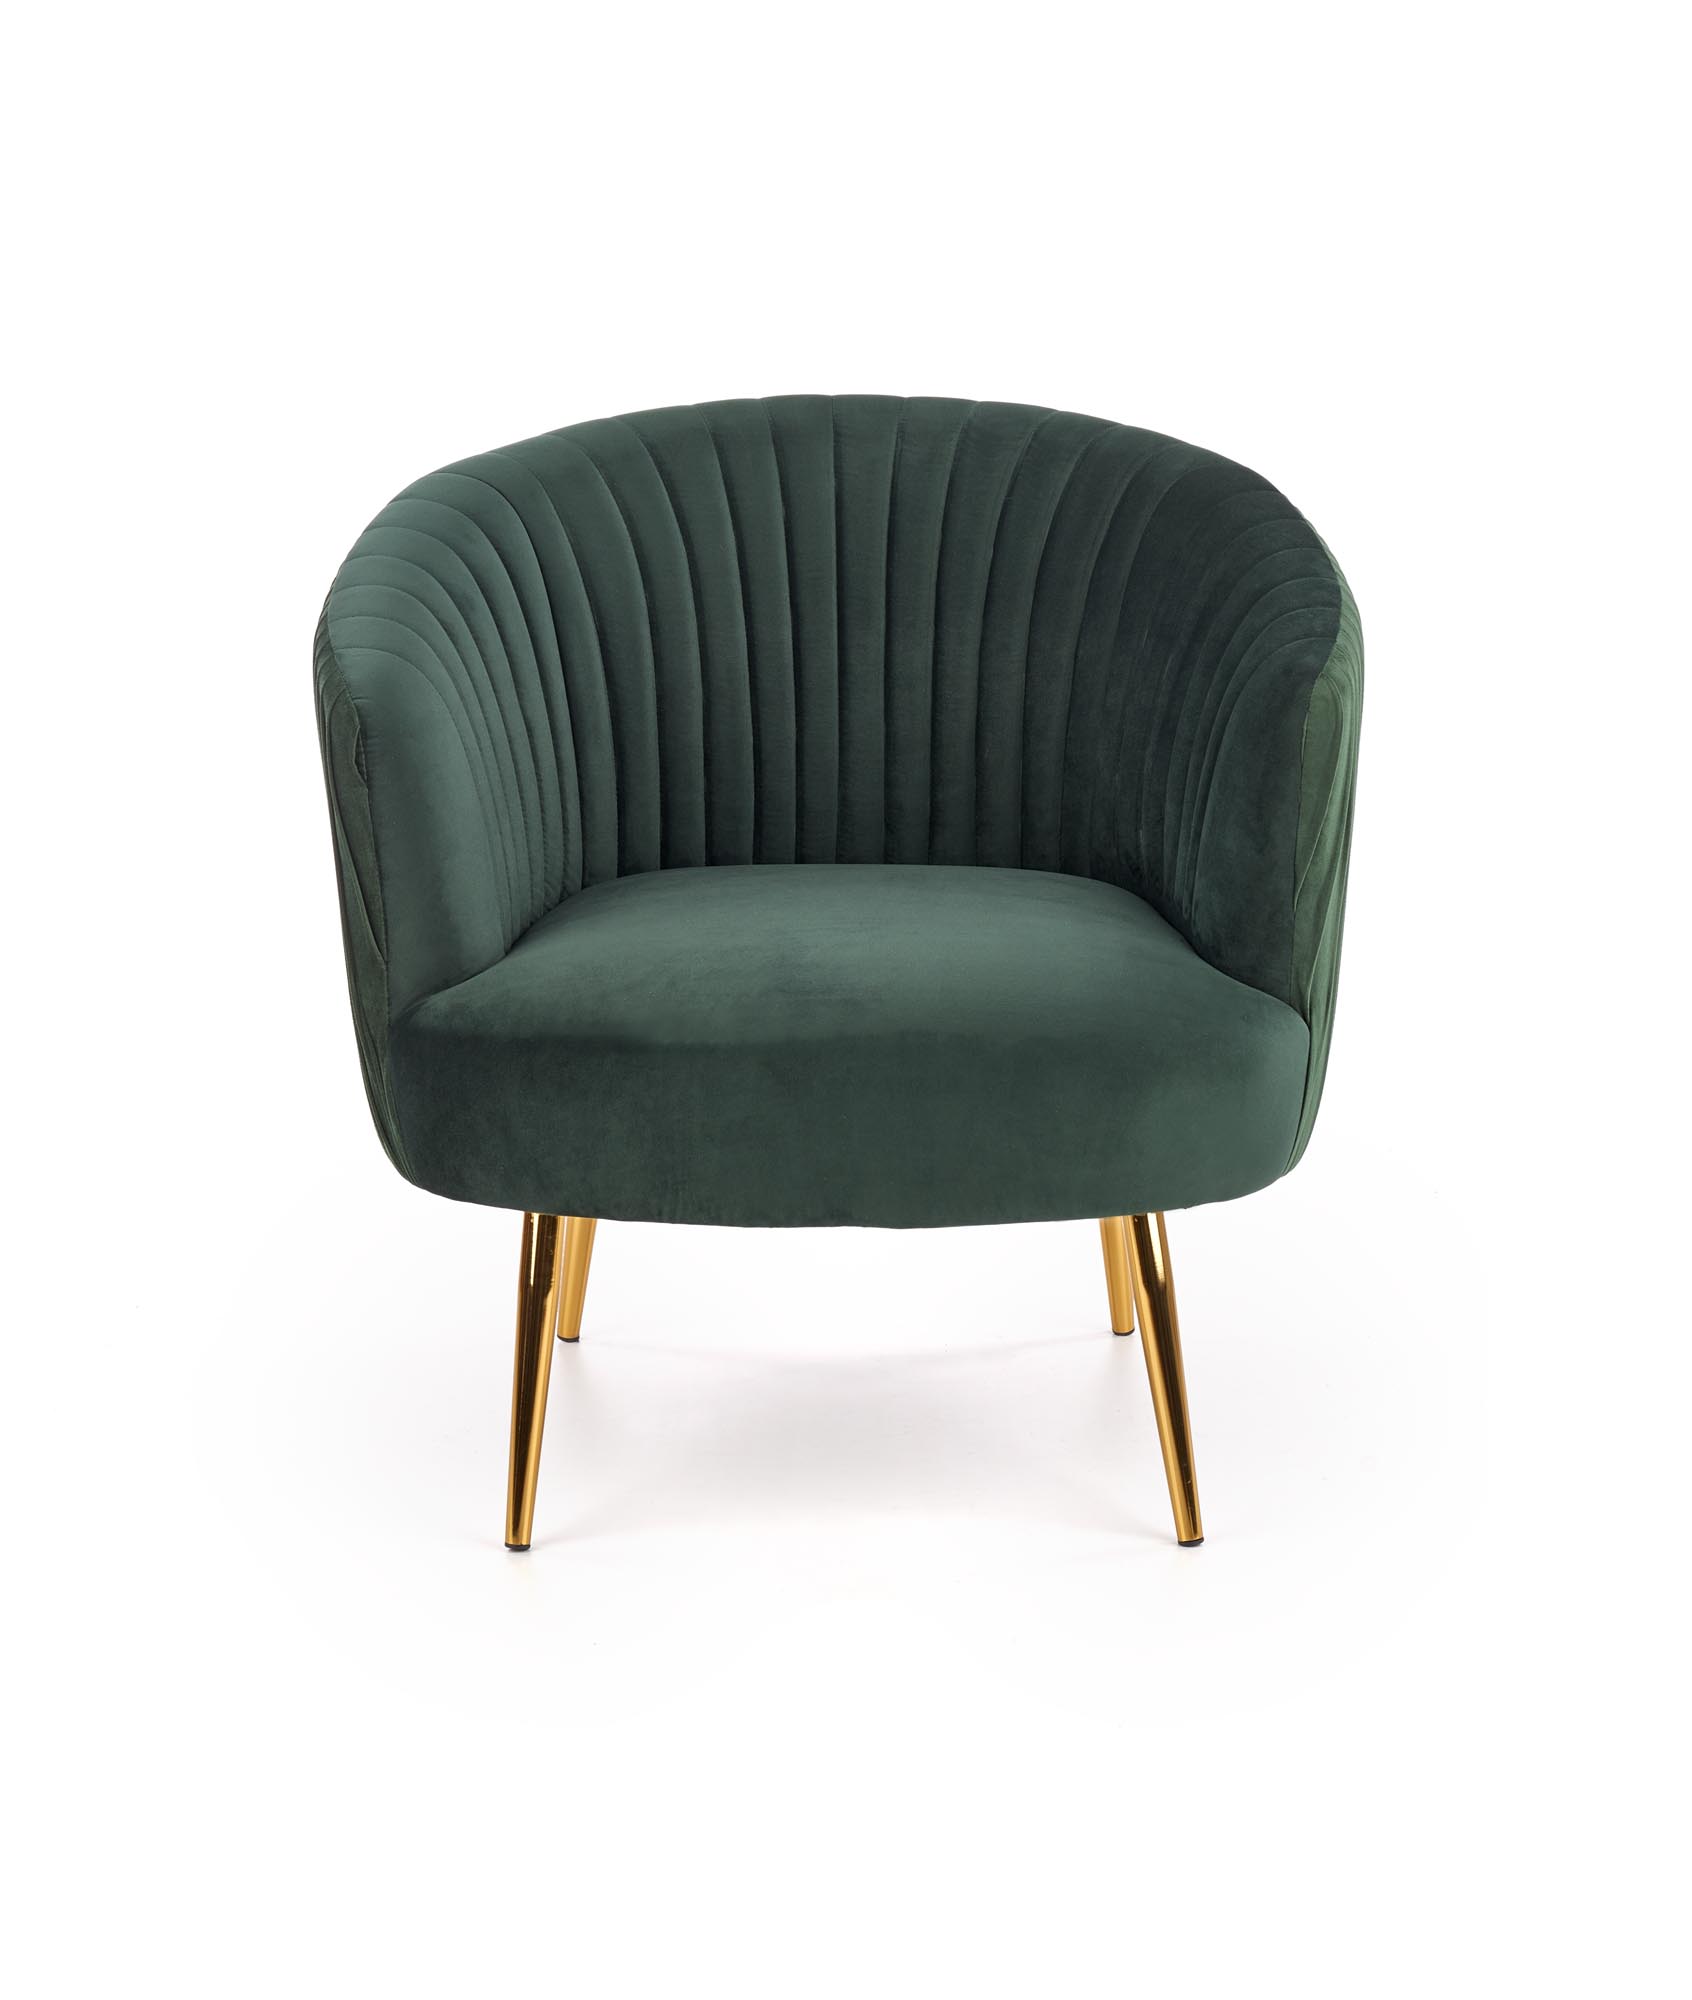 CROWN fotel wypoczynkowy ciemny zielony / złoty crown fotel wypoczynkowy ciemny zielony / złoty